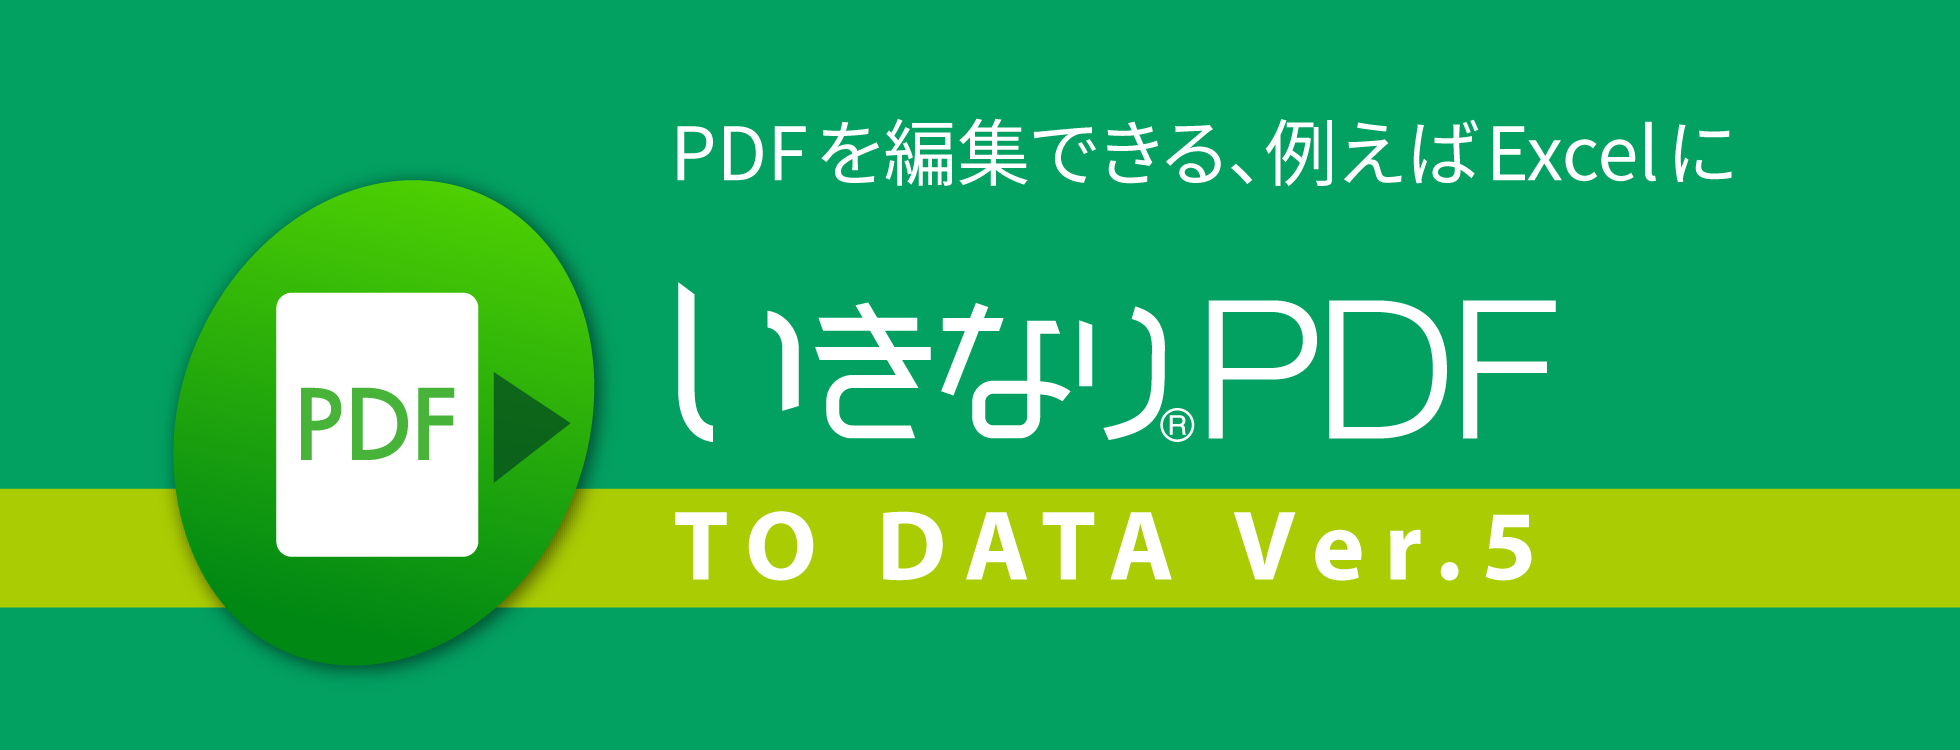 「いきなりPDF to Data Ver.5」